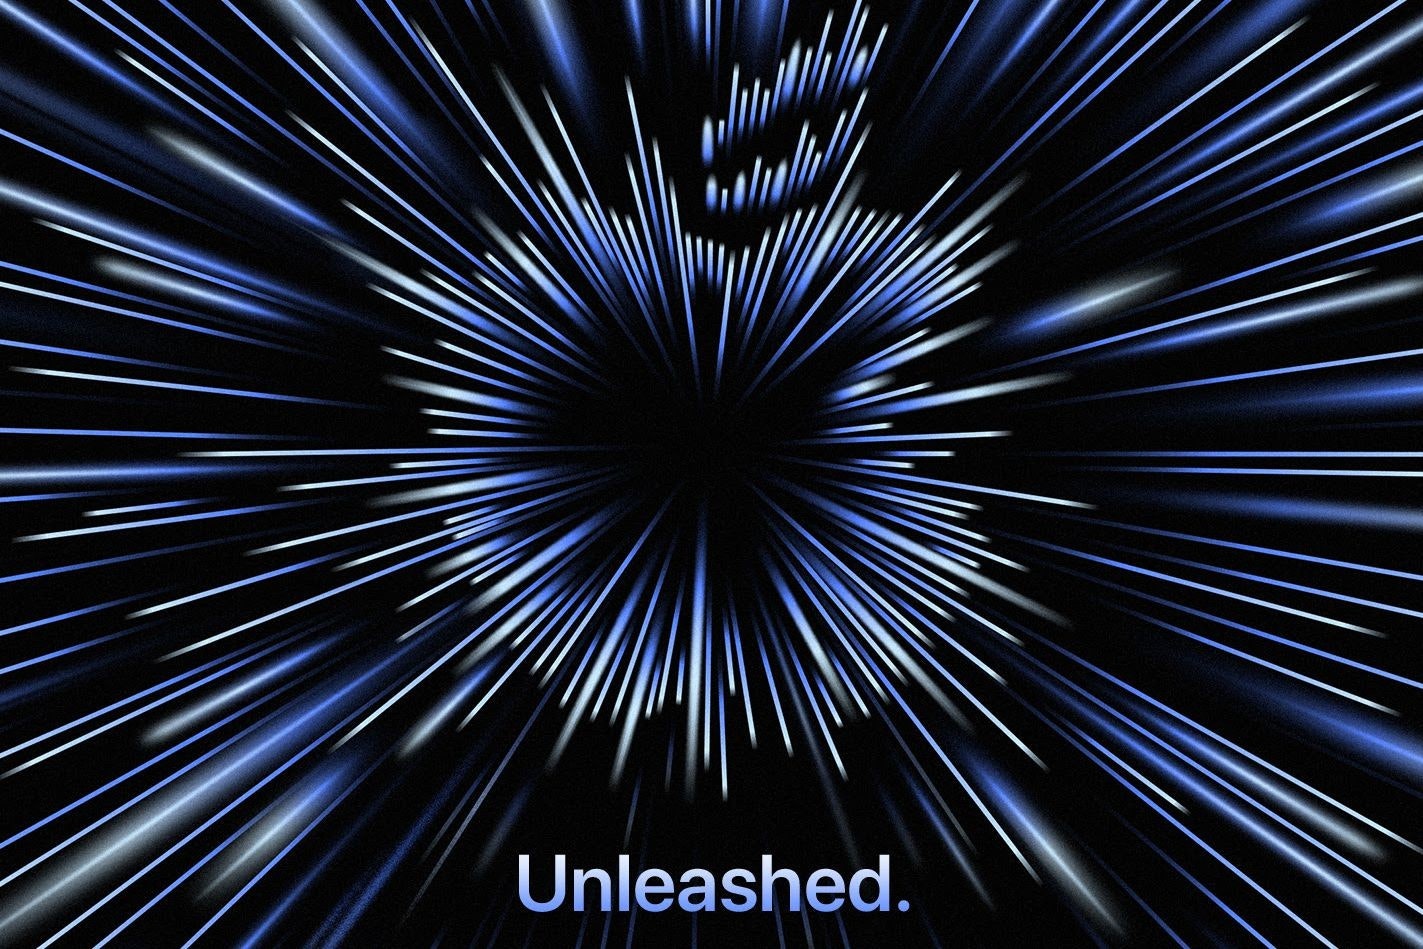 照片中提到了Unleashed.，包含了天空、對稱、線、牆紙、電腦